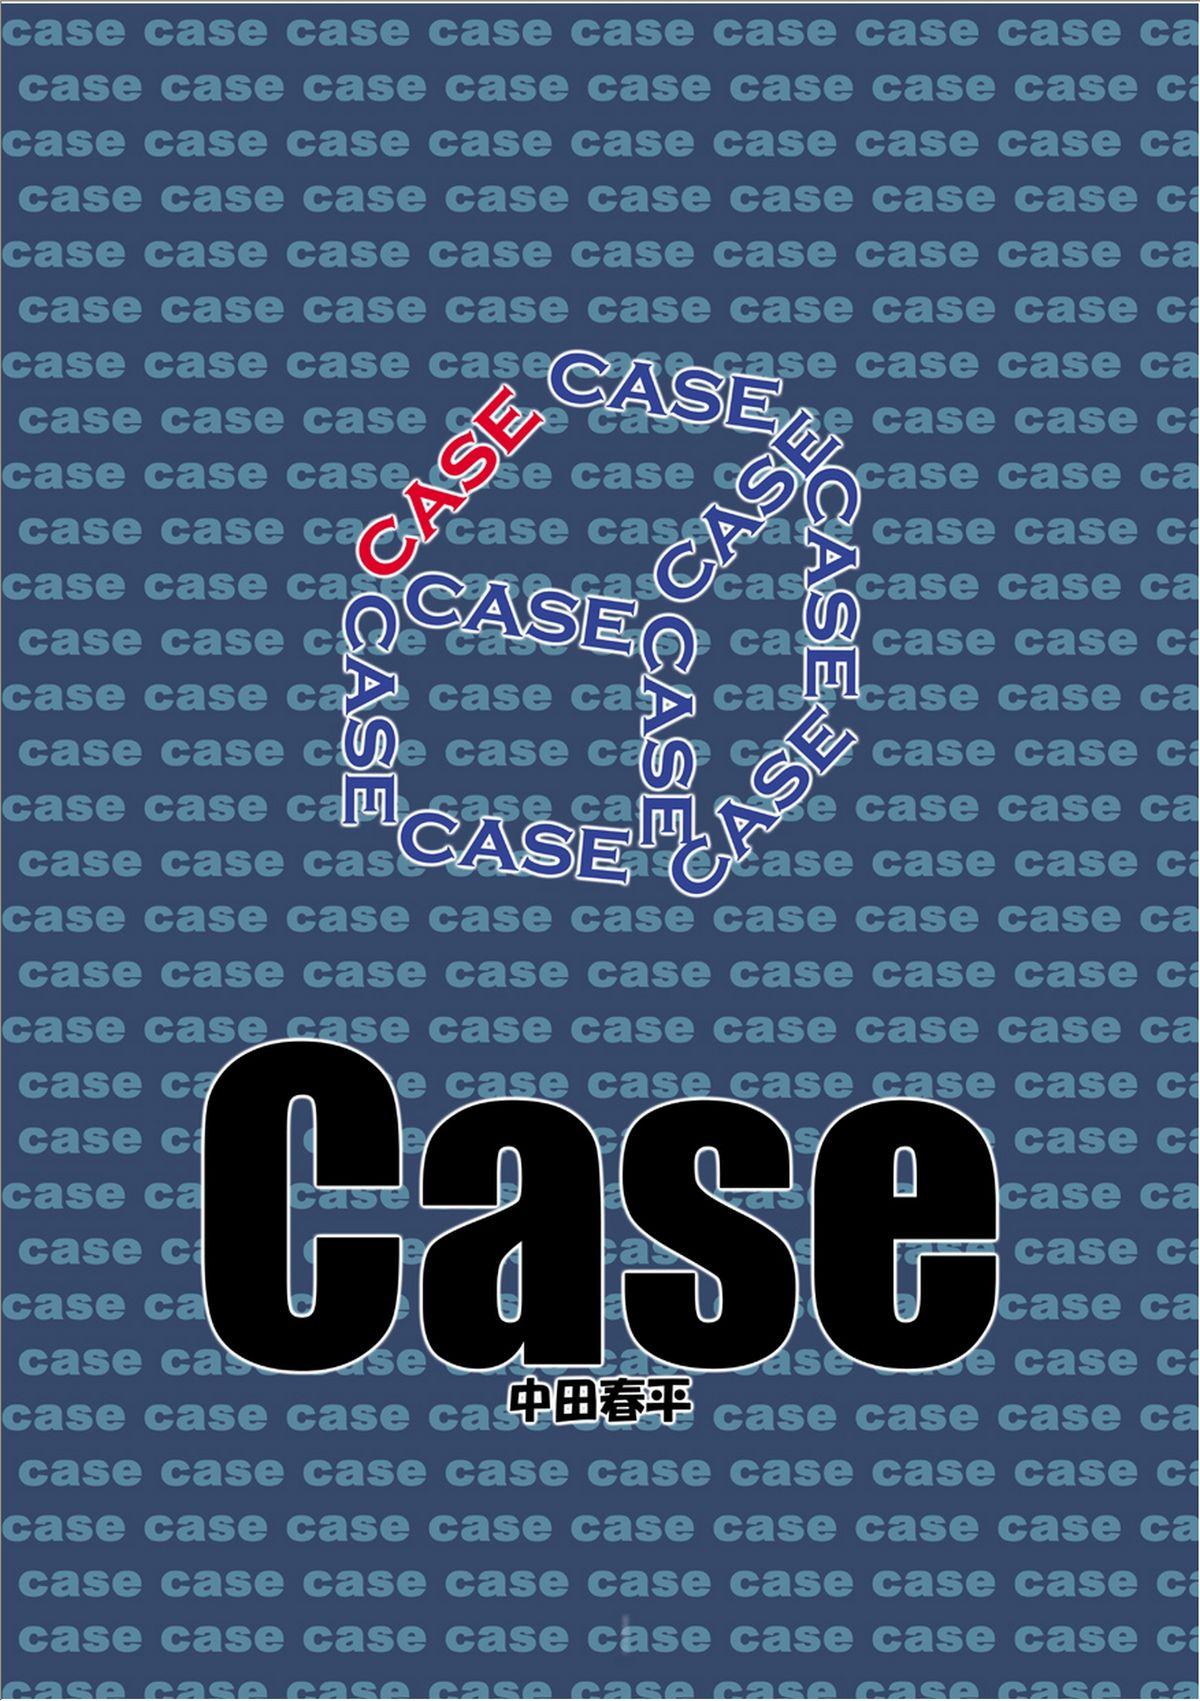 Case 49